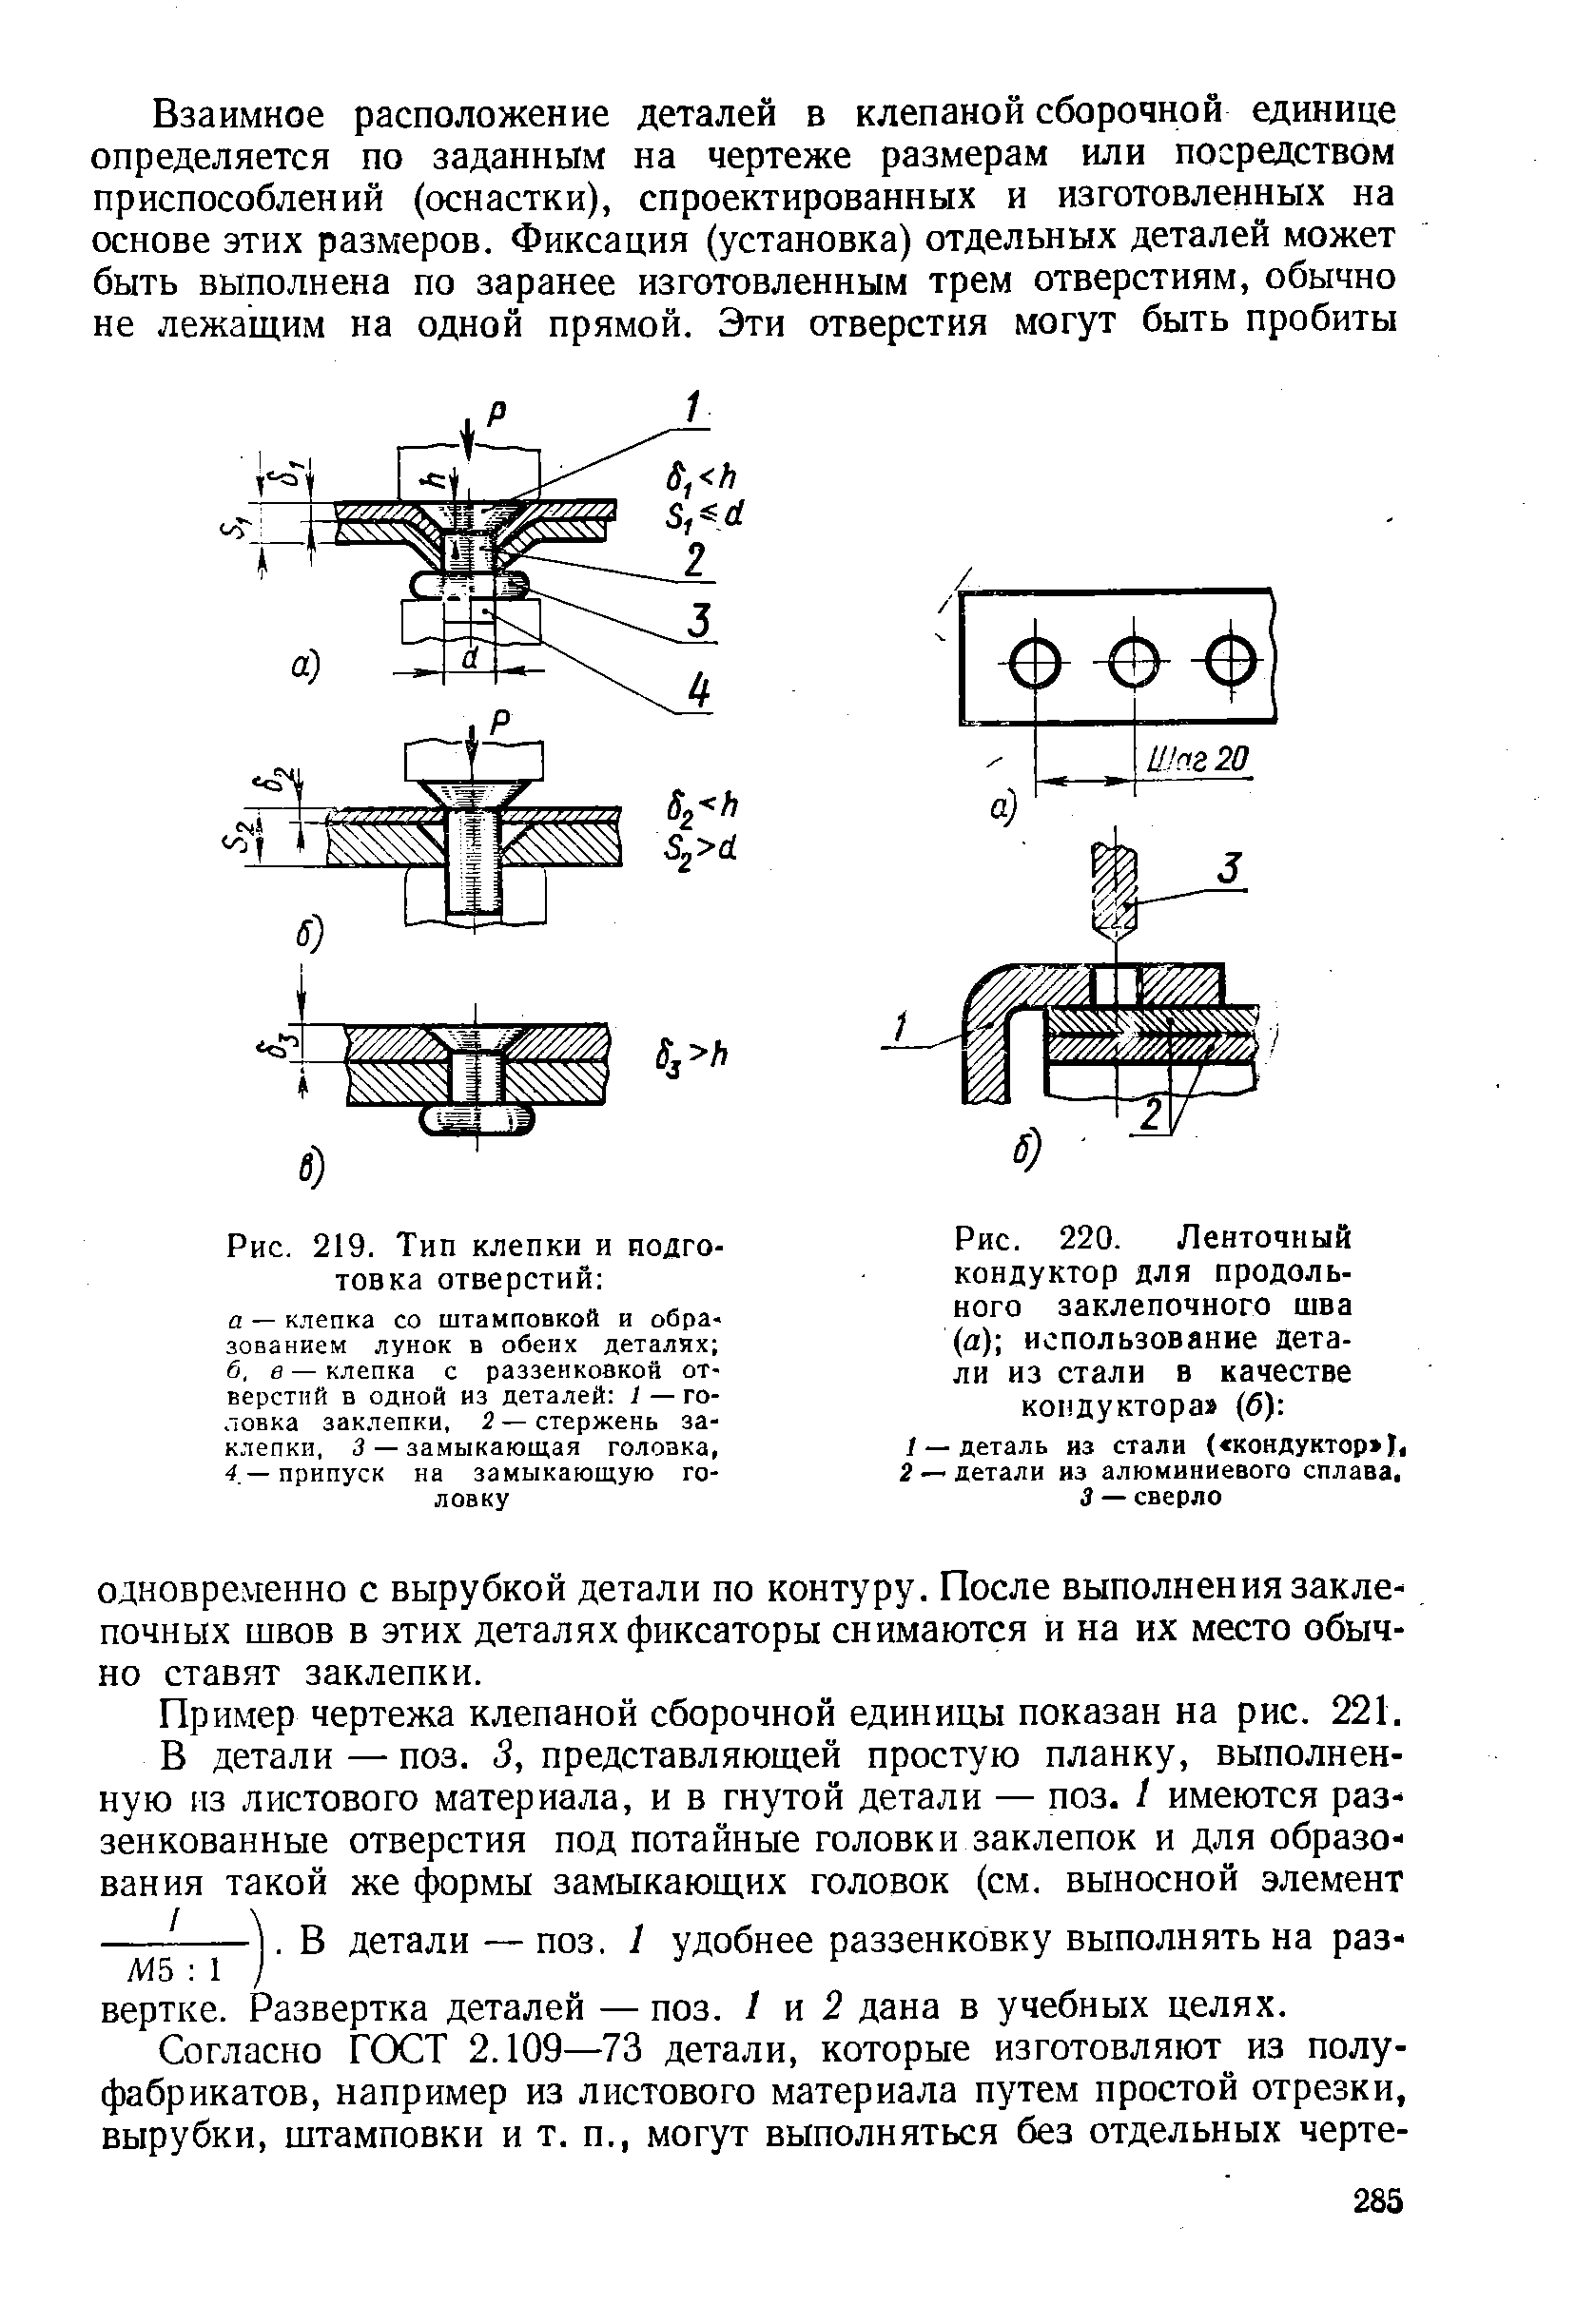 Рис. 220. Ленточный кондуктор для продольного заклепочного шва (а) использование детали из стали в качестве кондуктора (б) 
